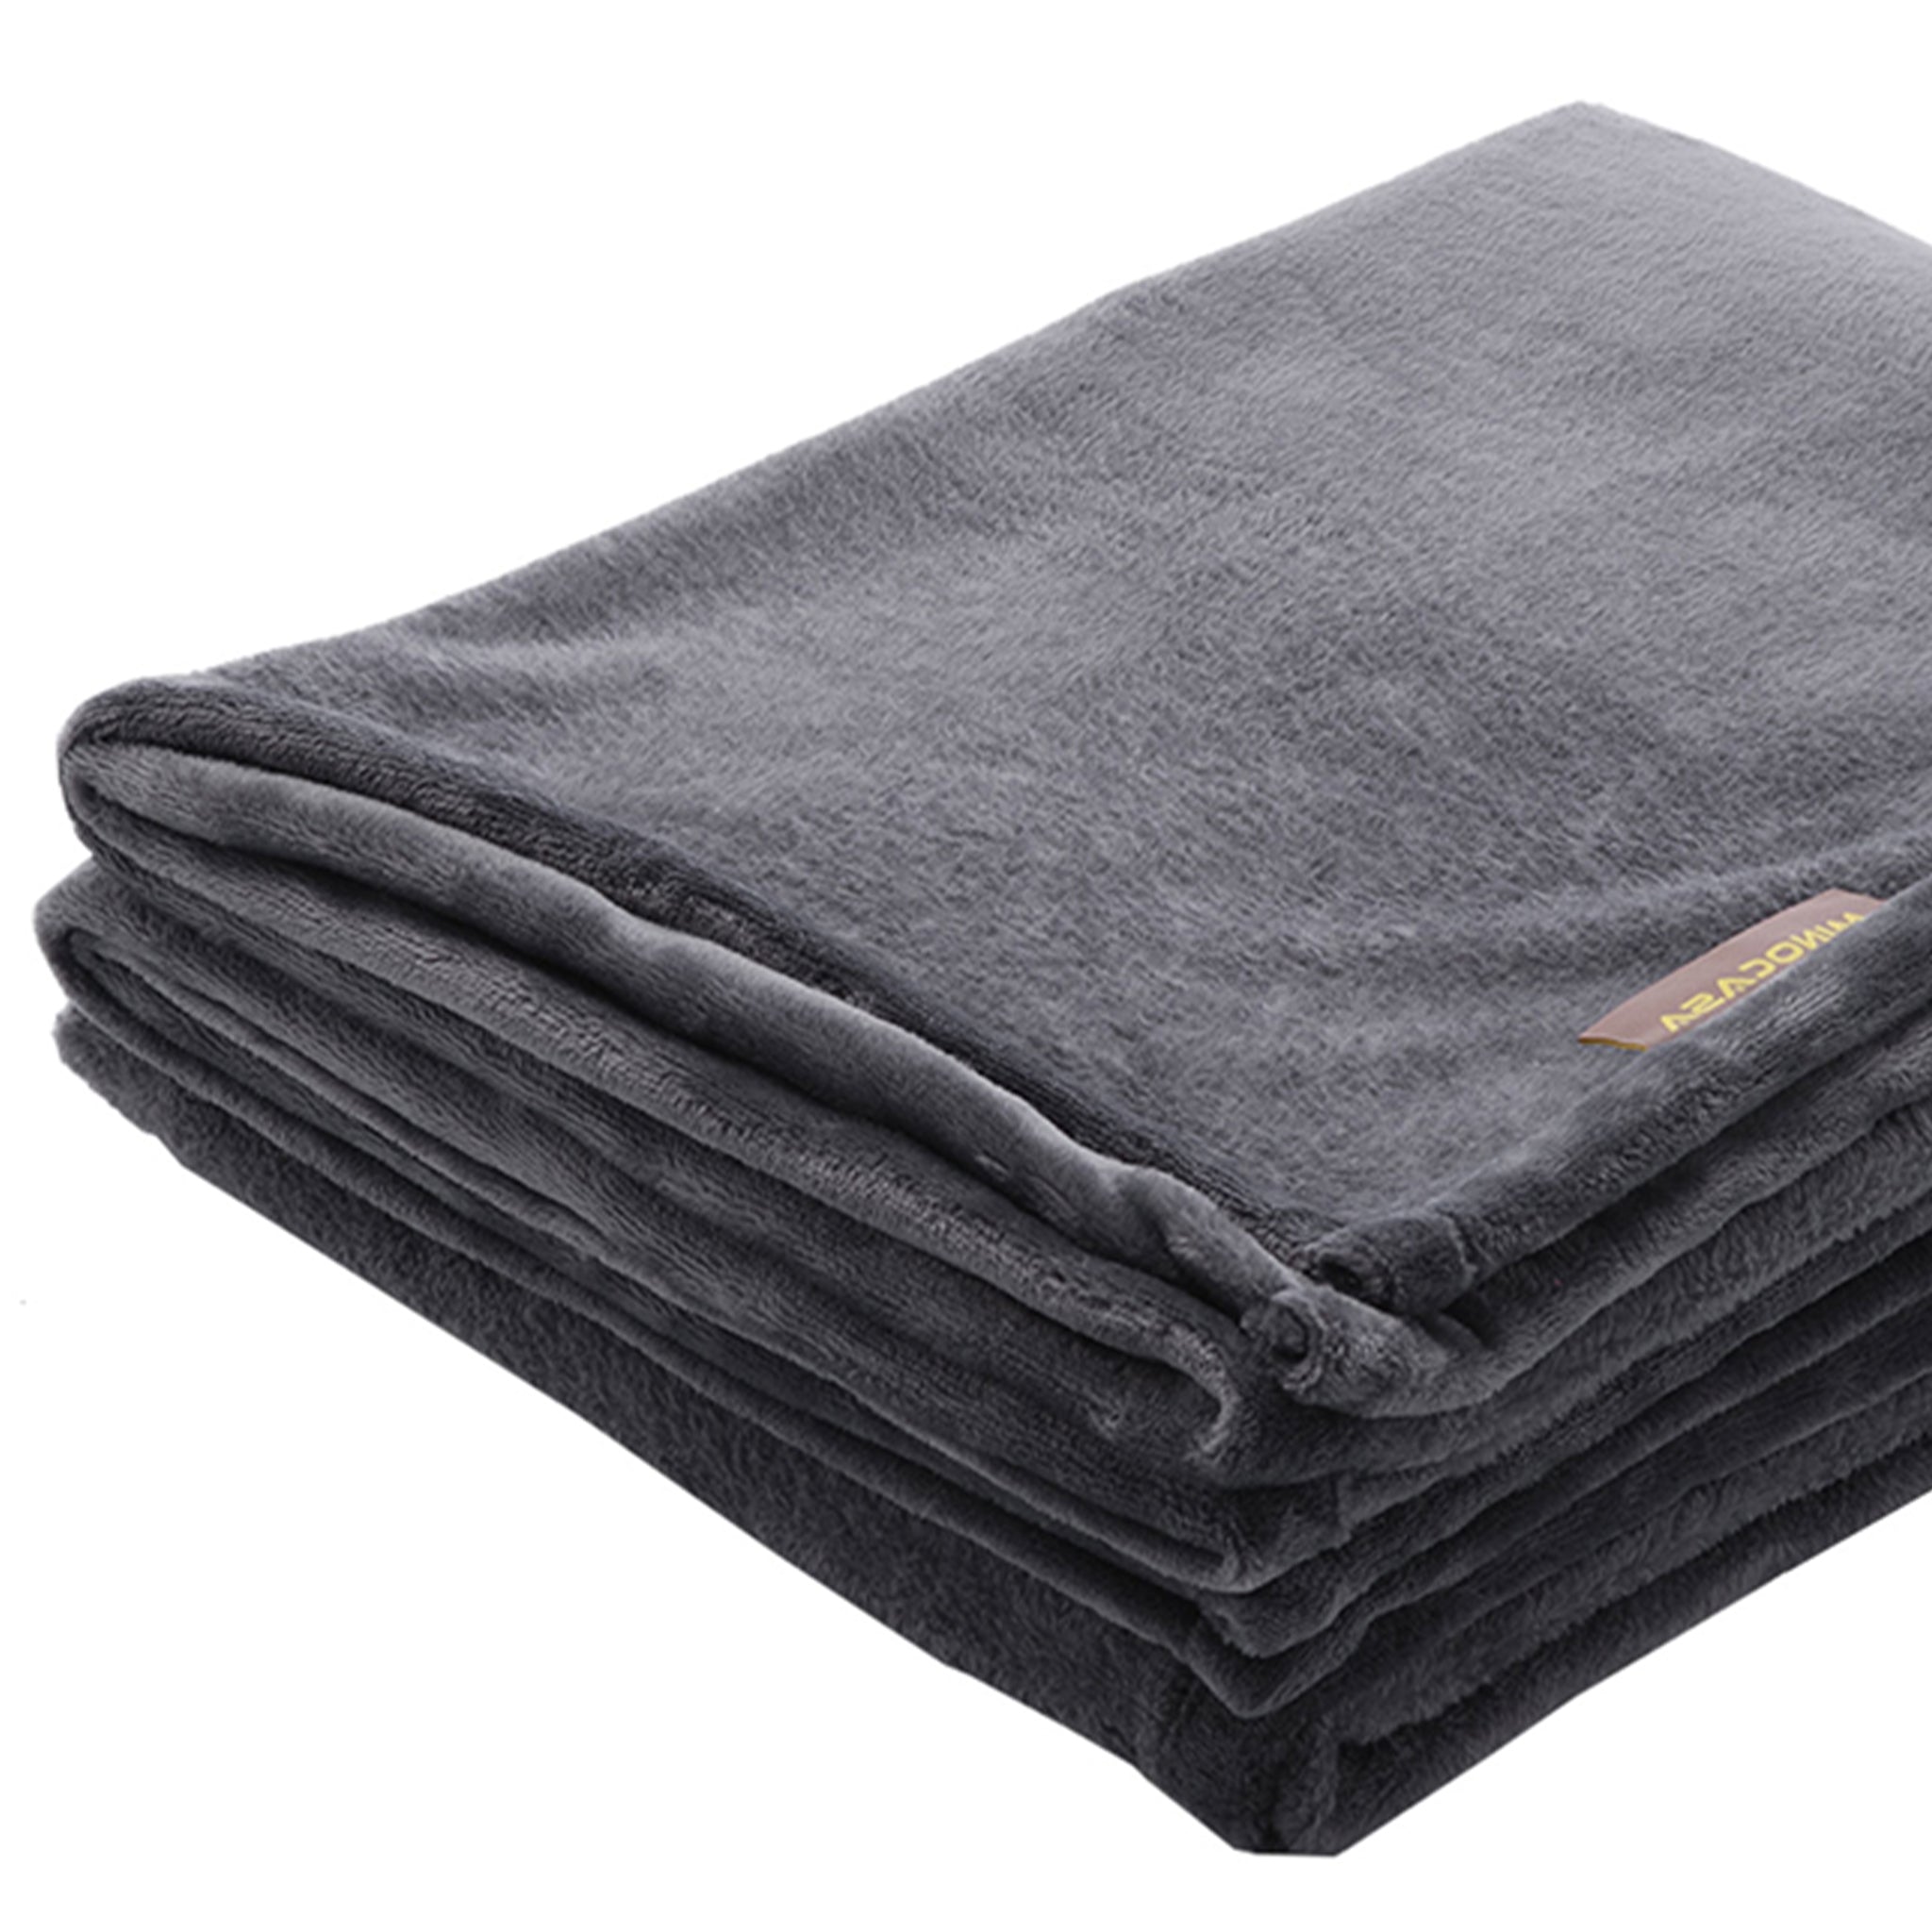 Minocasa Flannel Fleece Oversized Throw Blanket Main